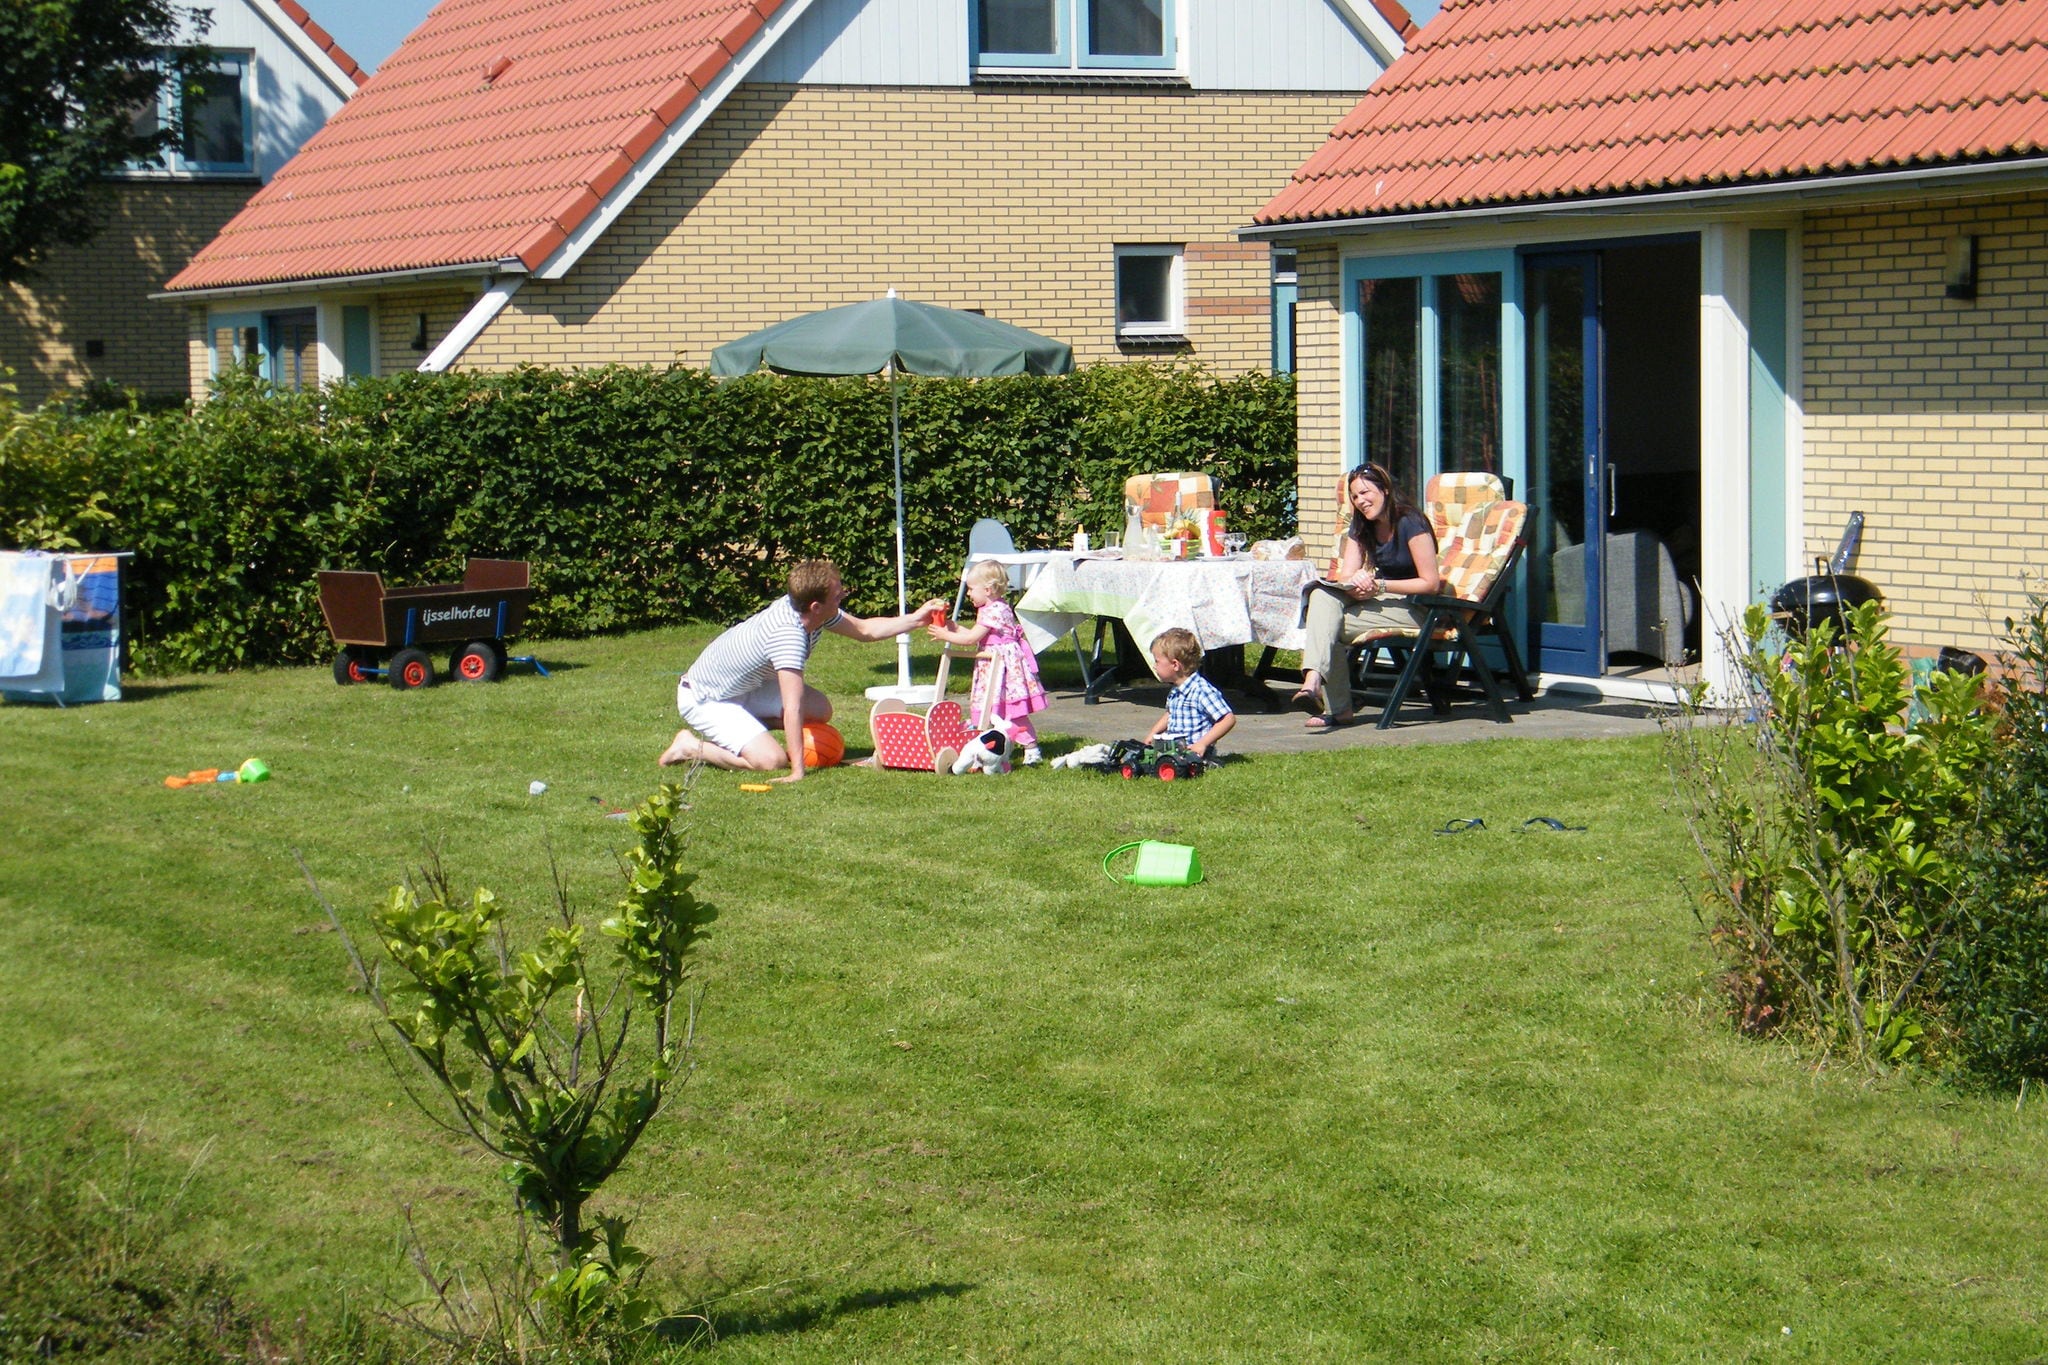 Villa mit großem Garten 19 km. van Hoorn